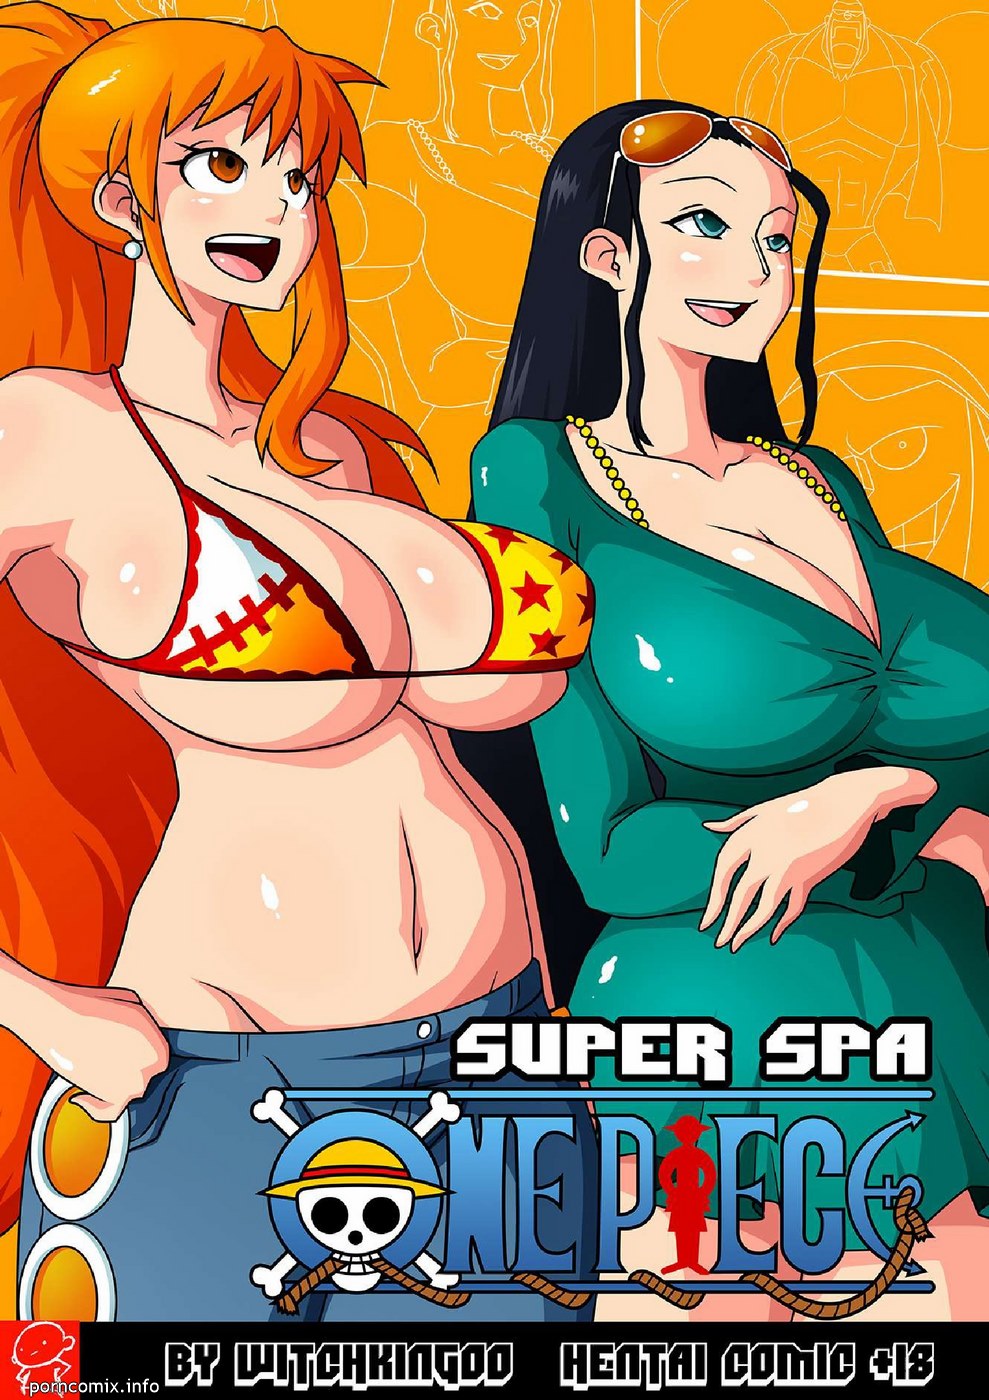 Porn Comics - Witchkingoo-Super Spa porn comics 8 muses